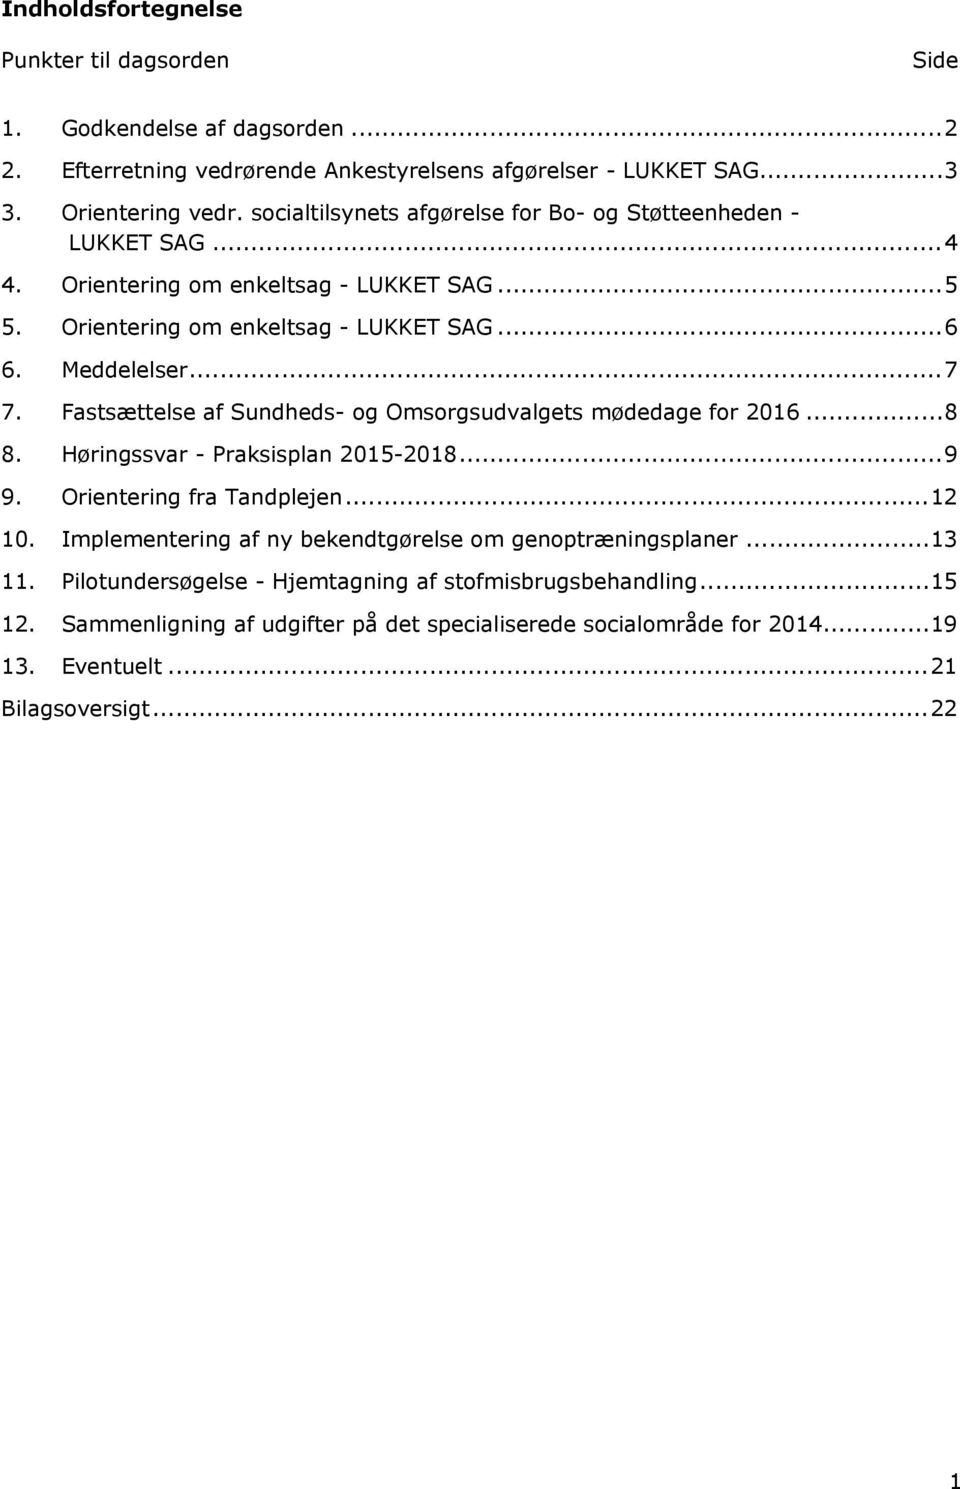 Fastsættelse af Sundheds- og Omsorgsudvalgets mødedage for 2016...8 8. Høringssvar - Praksisplan 2015-2018...9 9. Orientering fra Tandplejen...12 10.